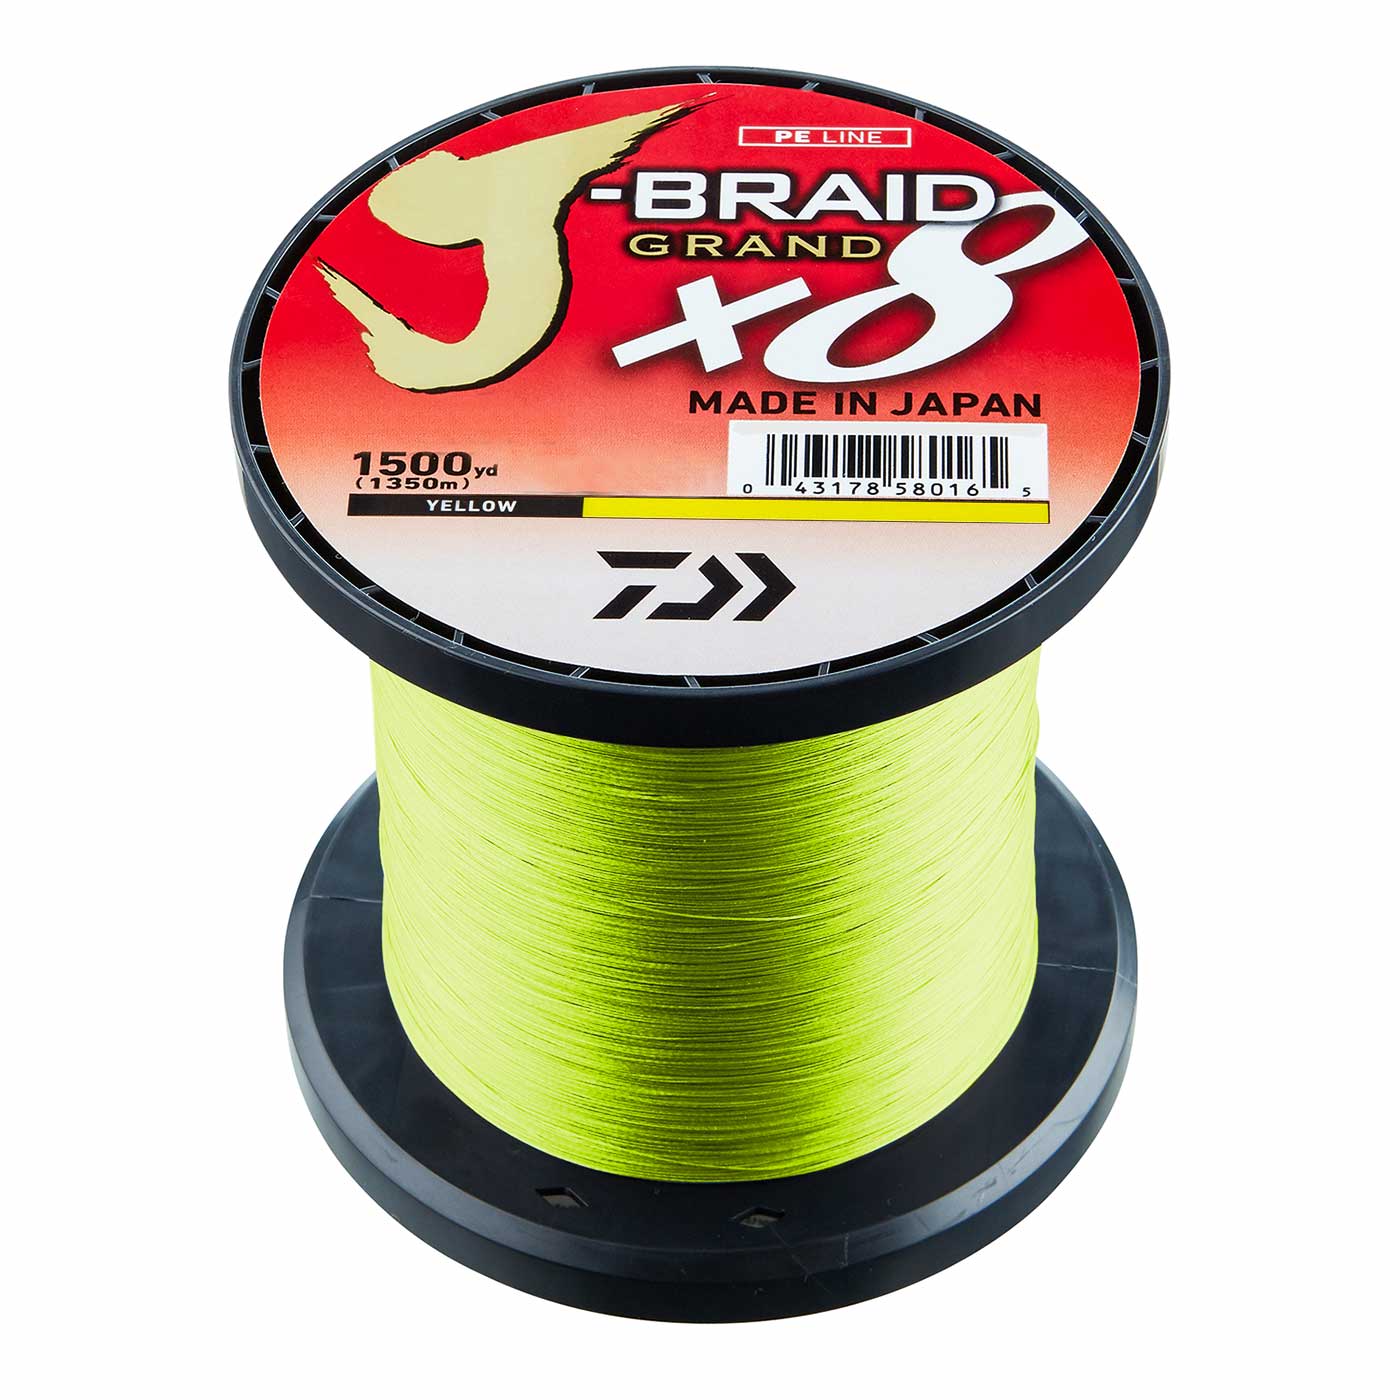 Daiwa J-Braid Grand X8 - 1350m/Yellow, 0.13mm & 8.5kg